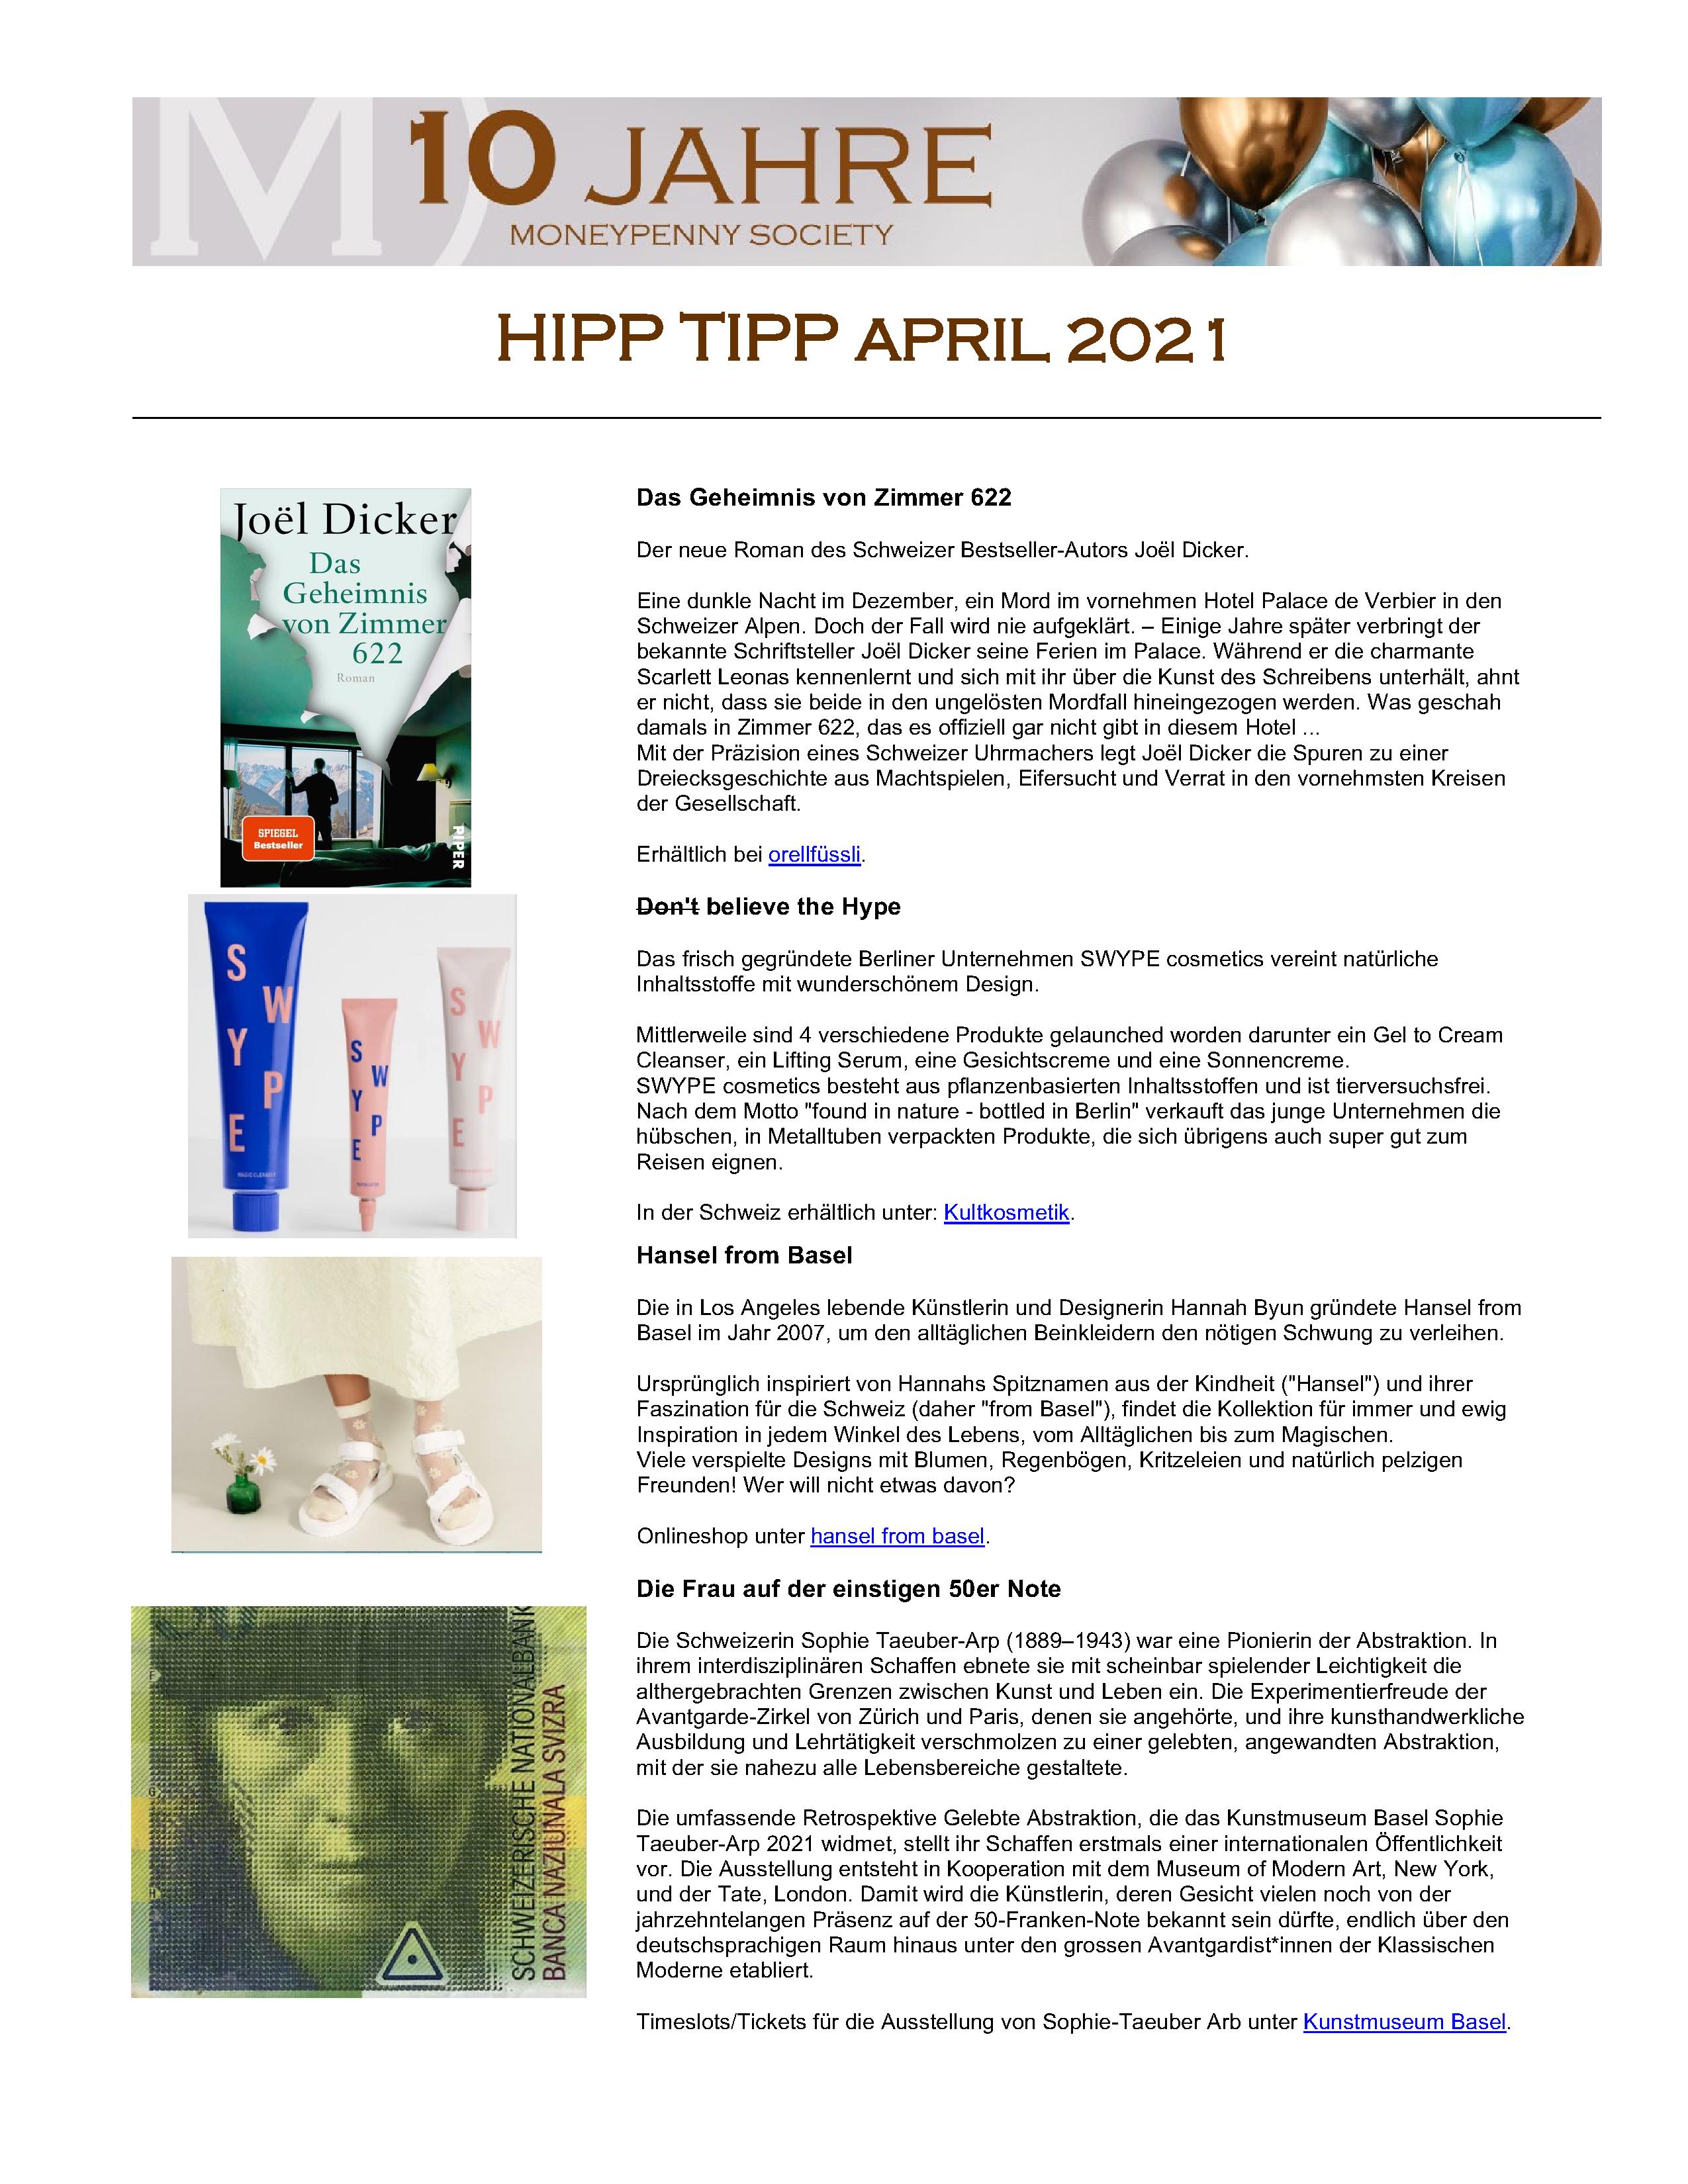 Hipp Tipp April 2021